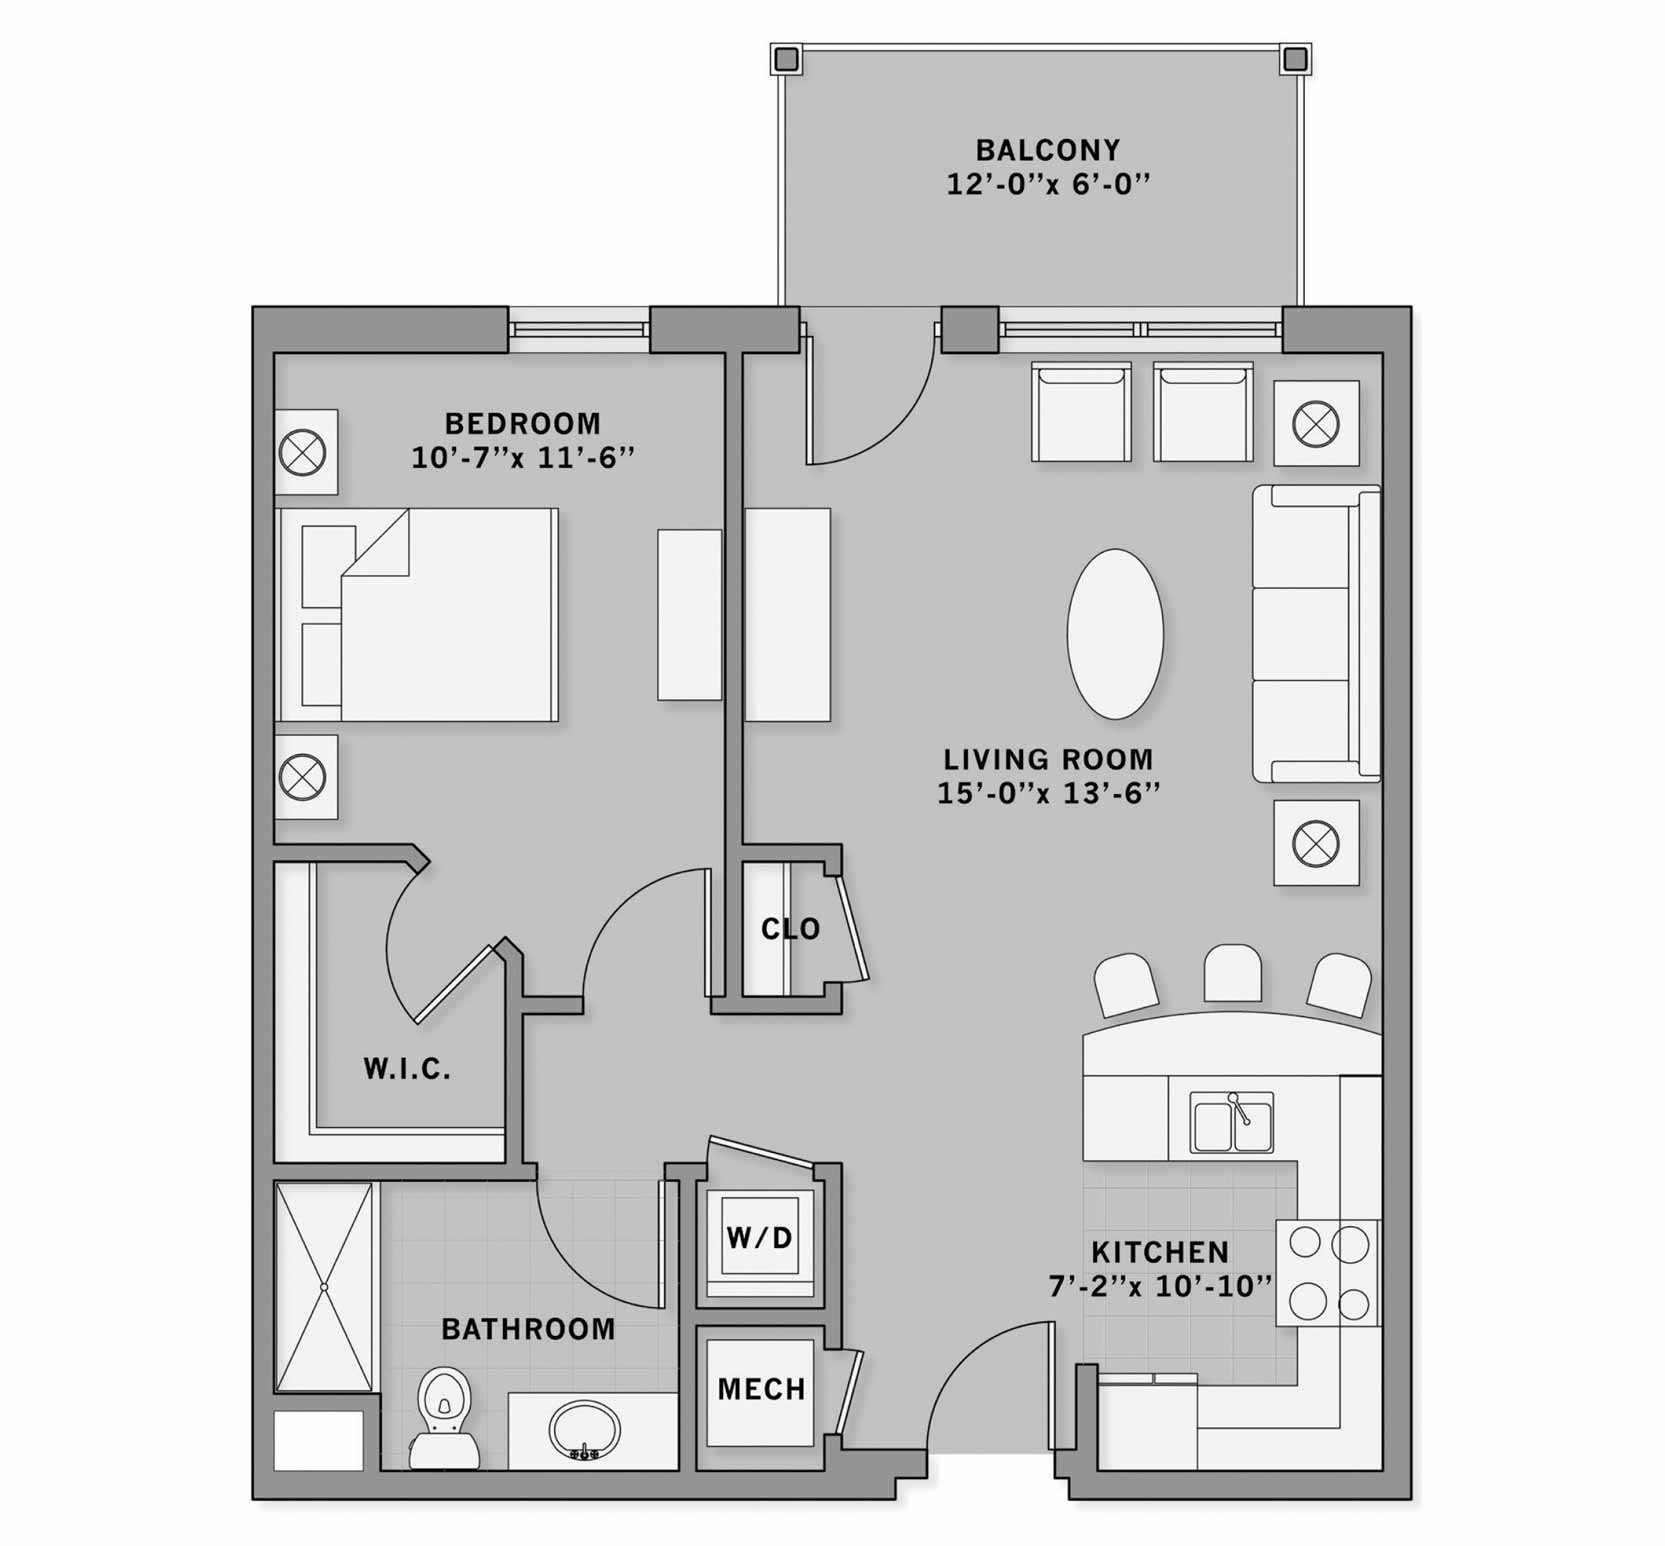 Simpson House floor plan - Washington senior apartment